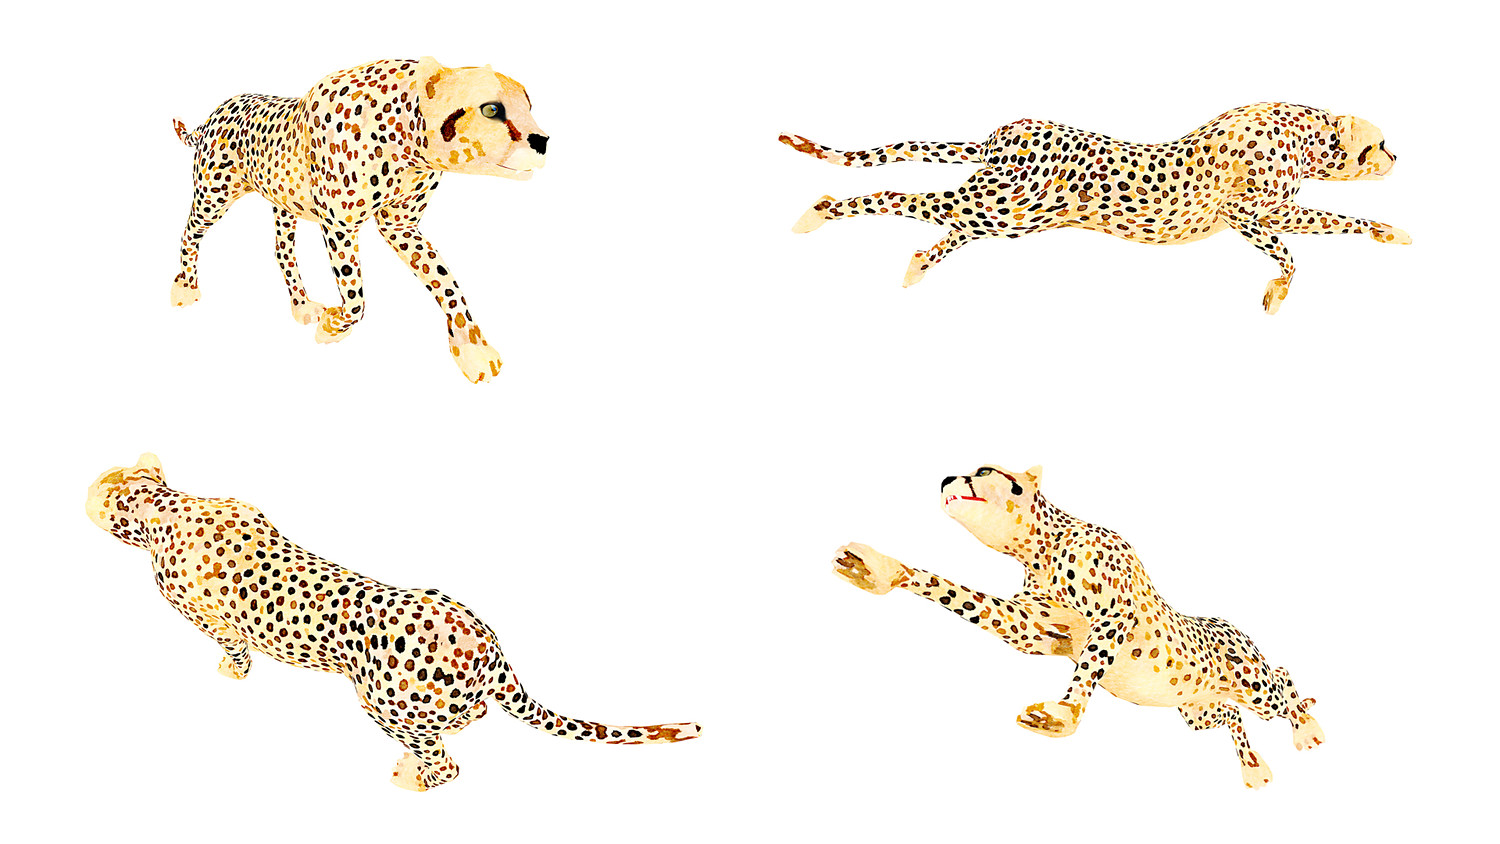 مدل سه بعدی حیوانات آفریقایی انیمیت شده - 10